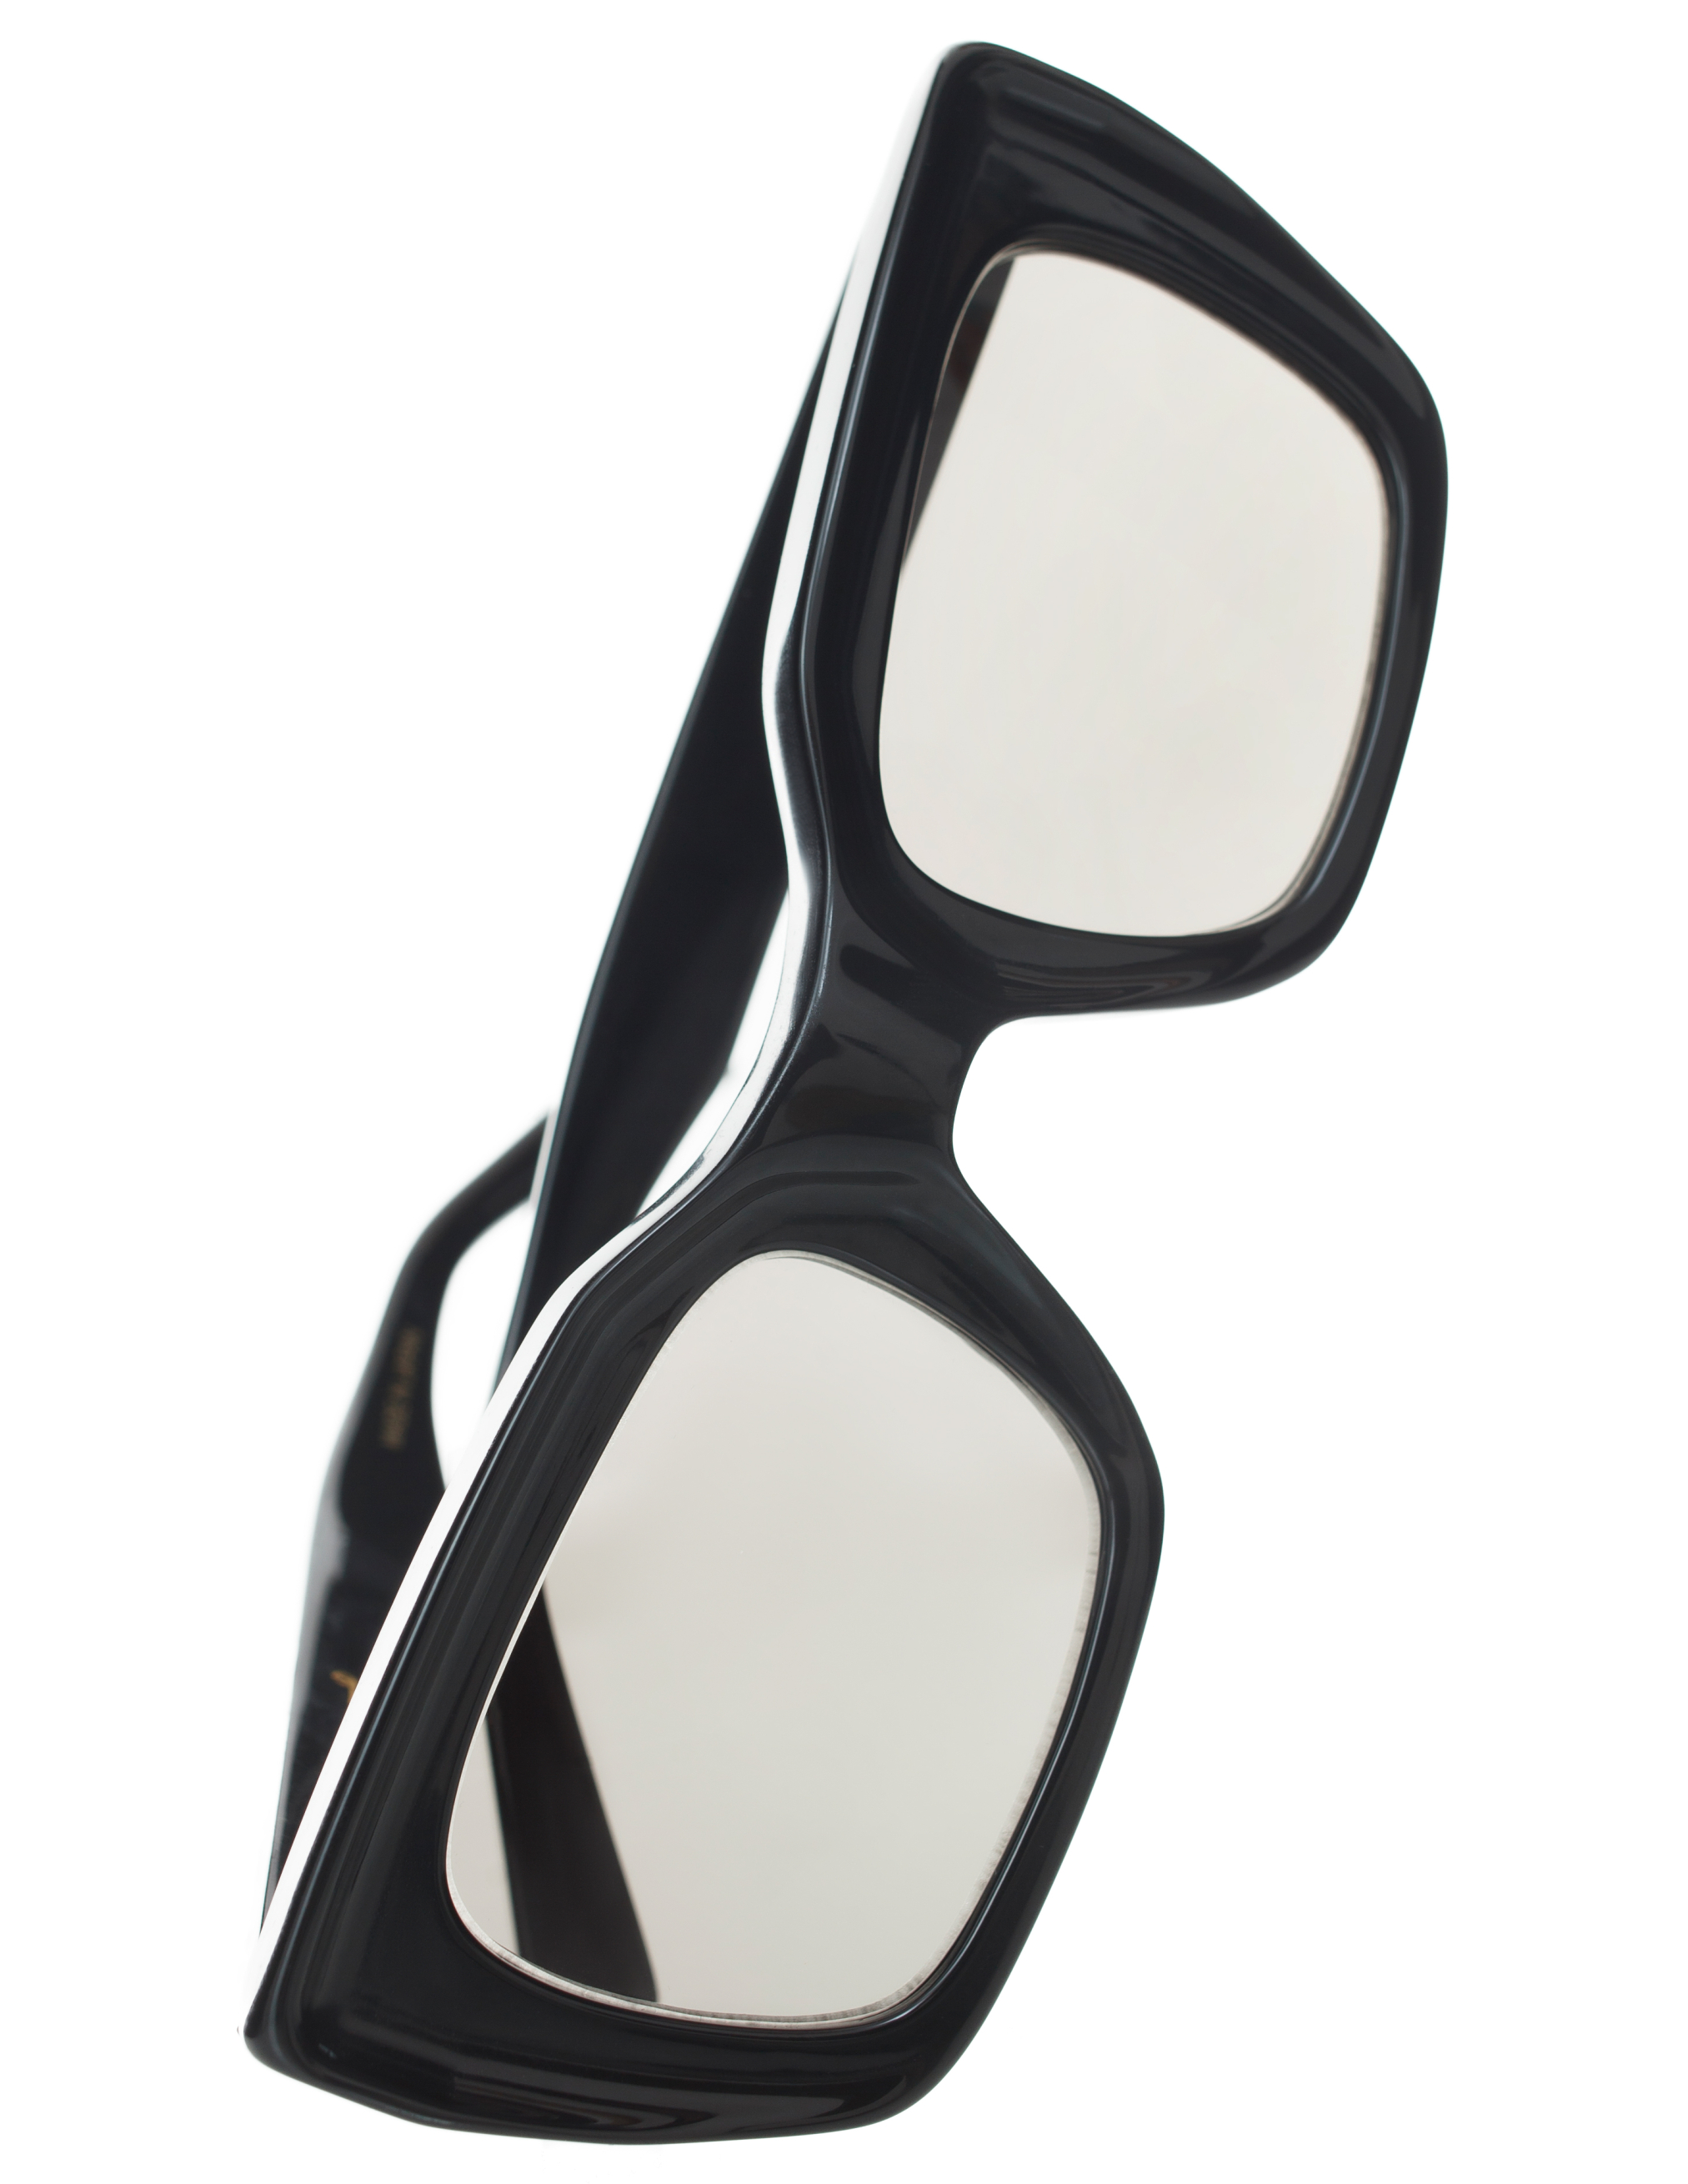 Солнцезащитные очки с прямоугольной оправой Undercover UC1C4E01/BLACK, размер One Size UC1C4E01/BLACK - фото 1